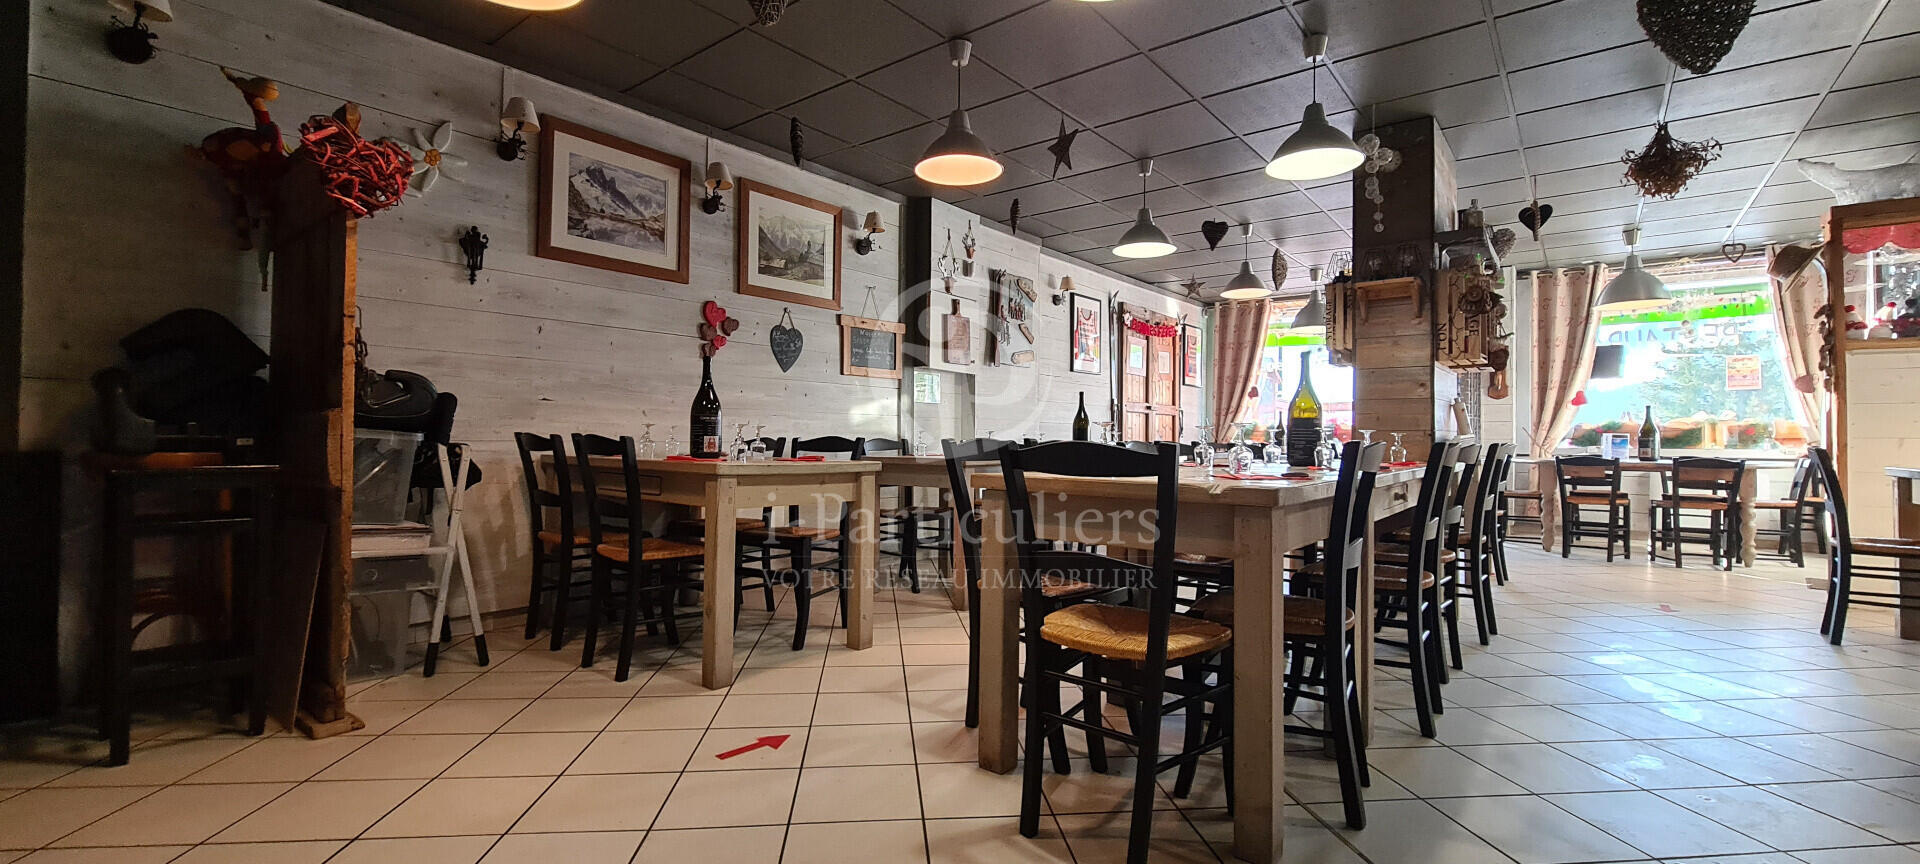 Vente restaurant à Saint francois Longchamp